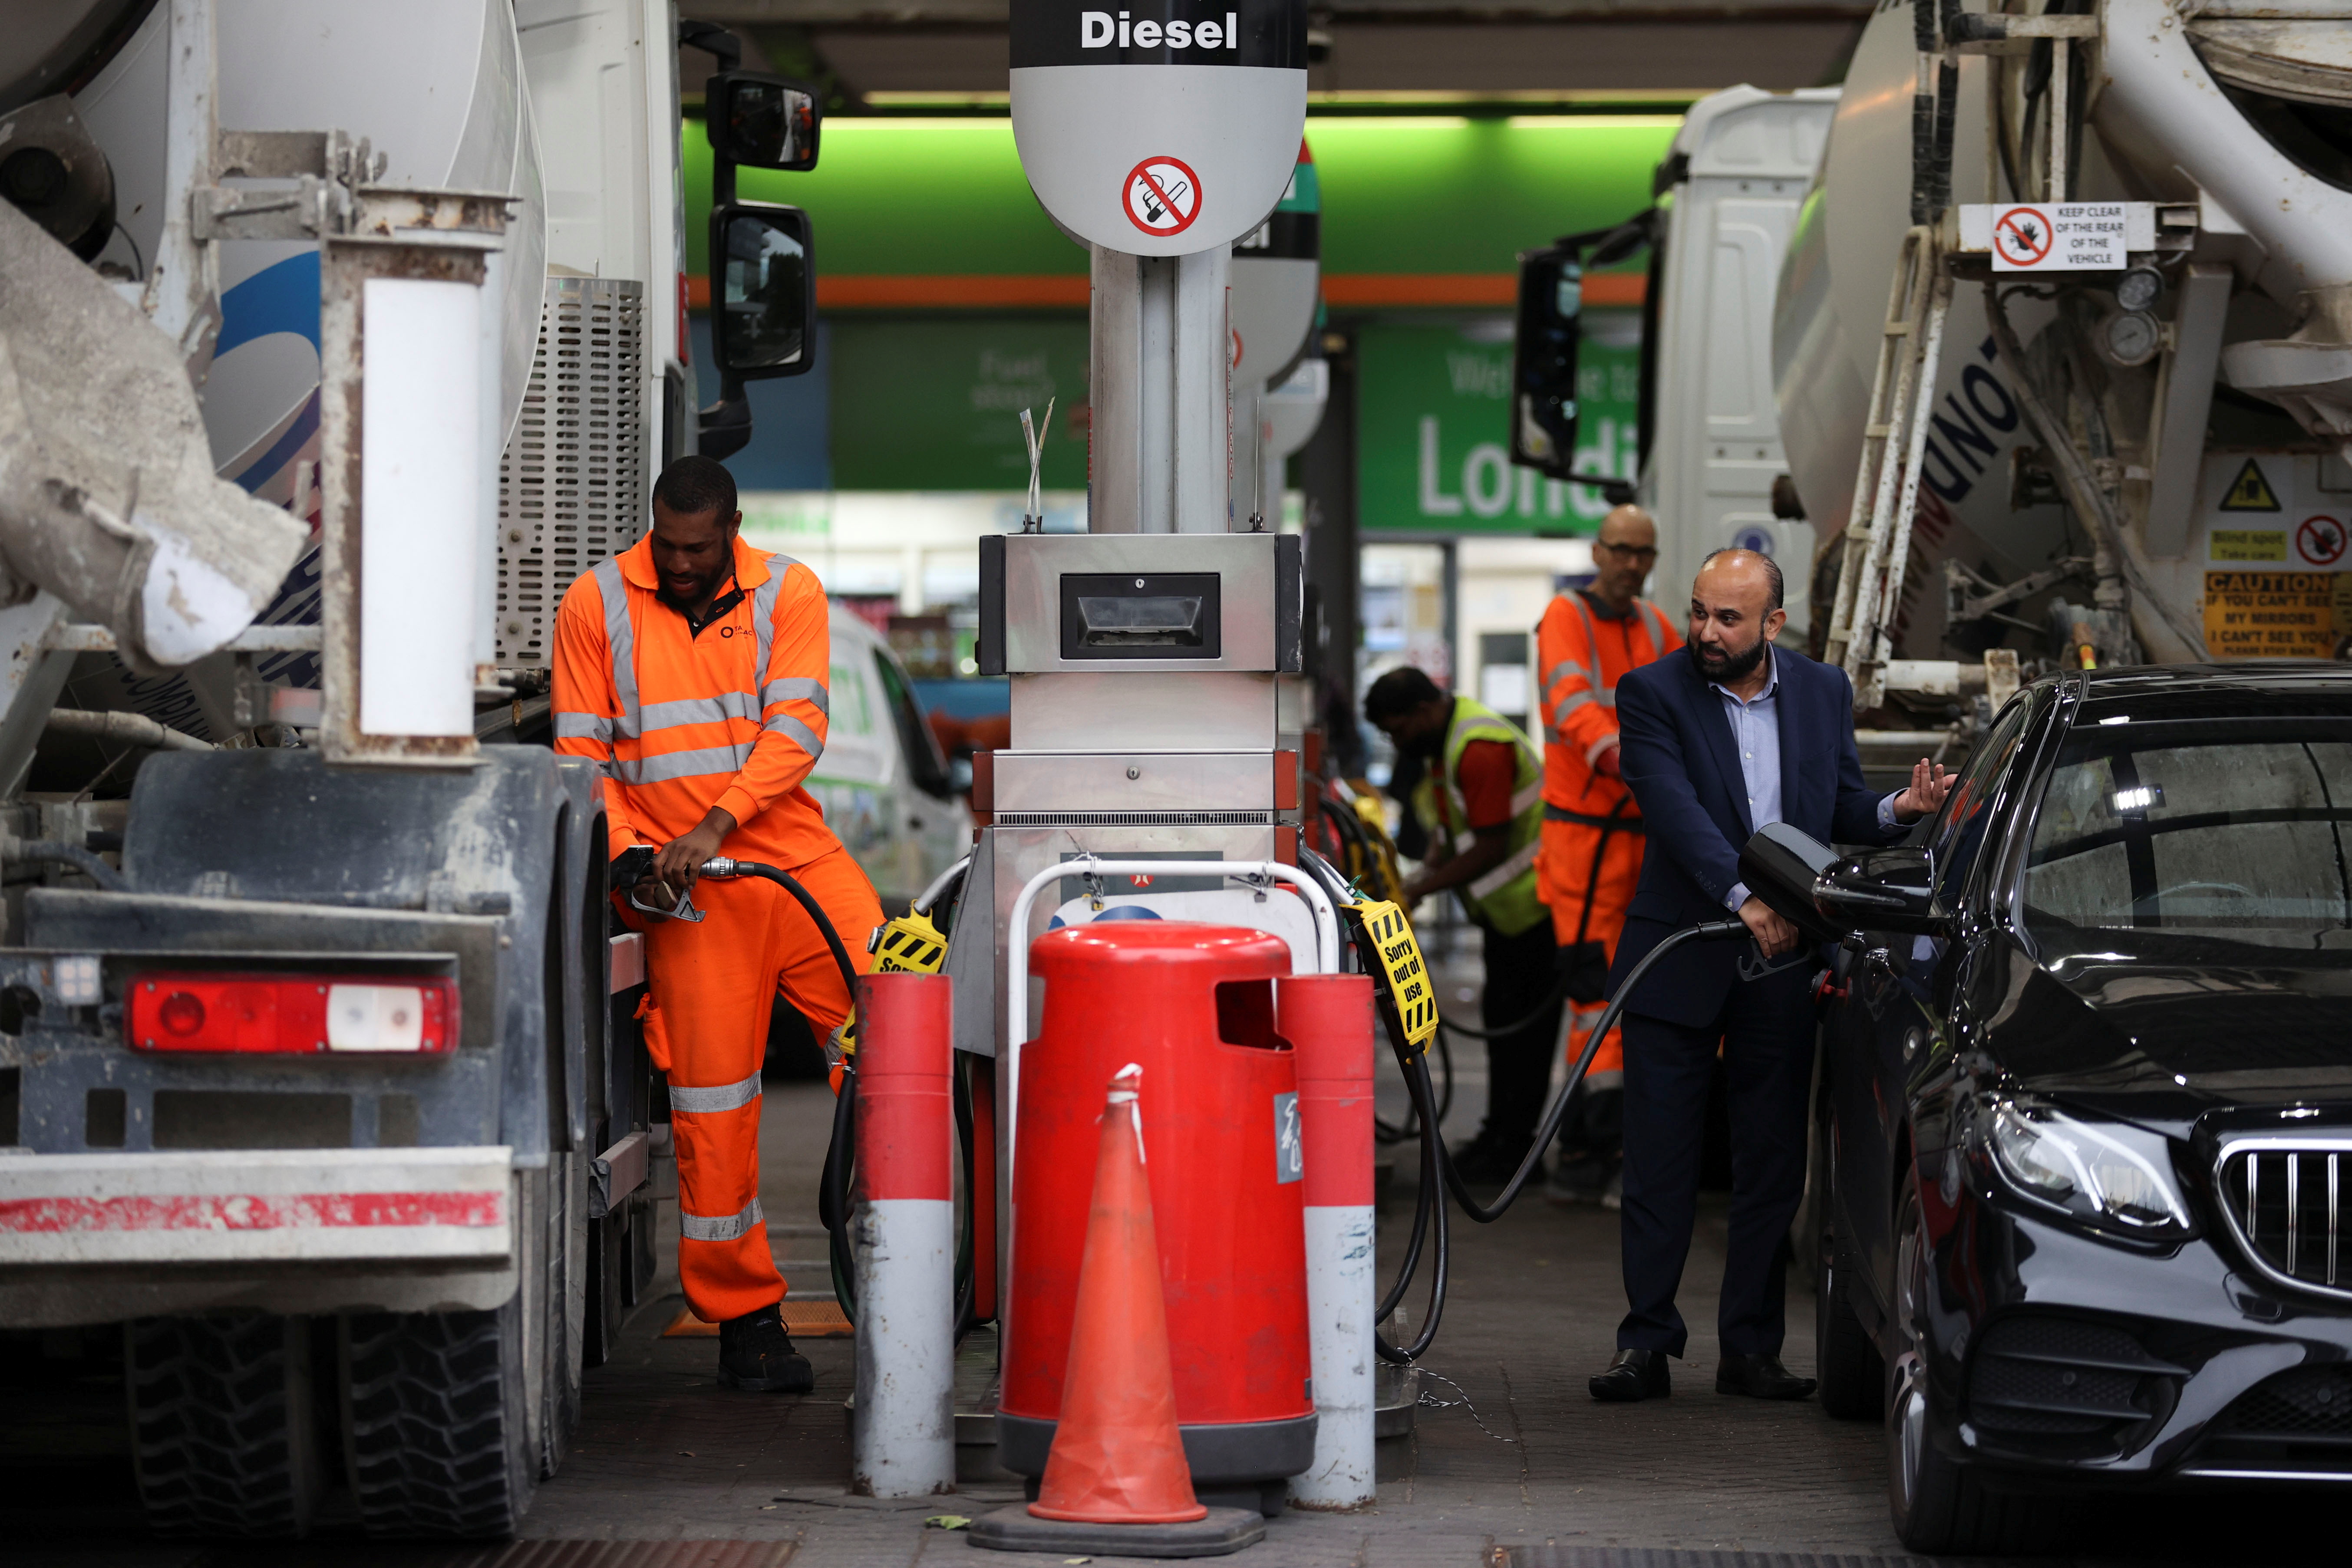 Las personas repostan sus vehículos en una estación de servicio en Londres, Gran Bretaña, el 30 de septiembre de 2021. REUTERS / Hannah McKay